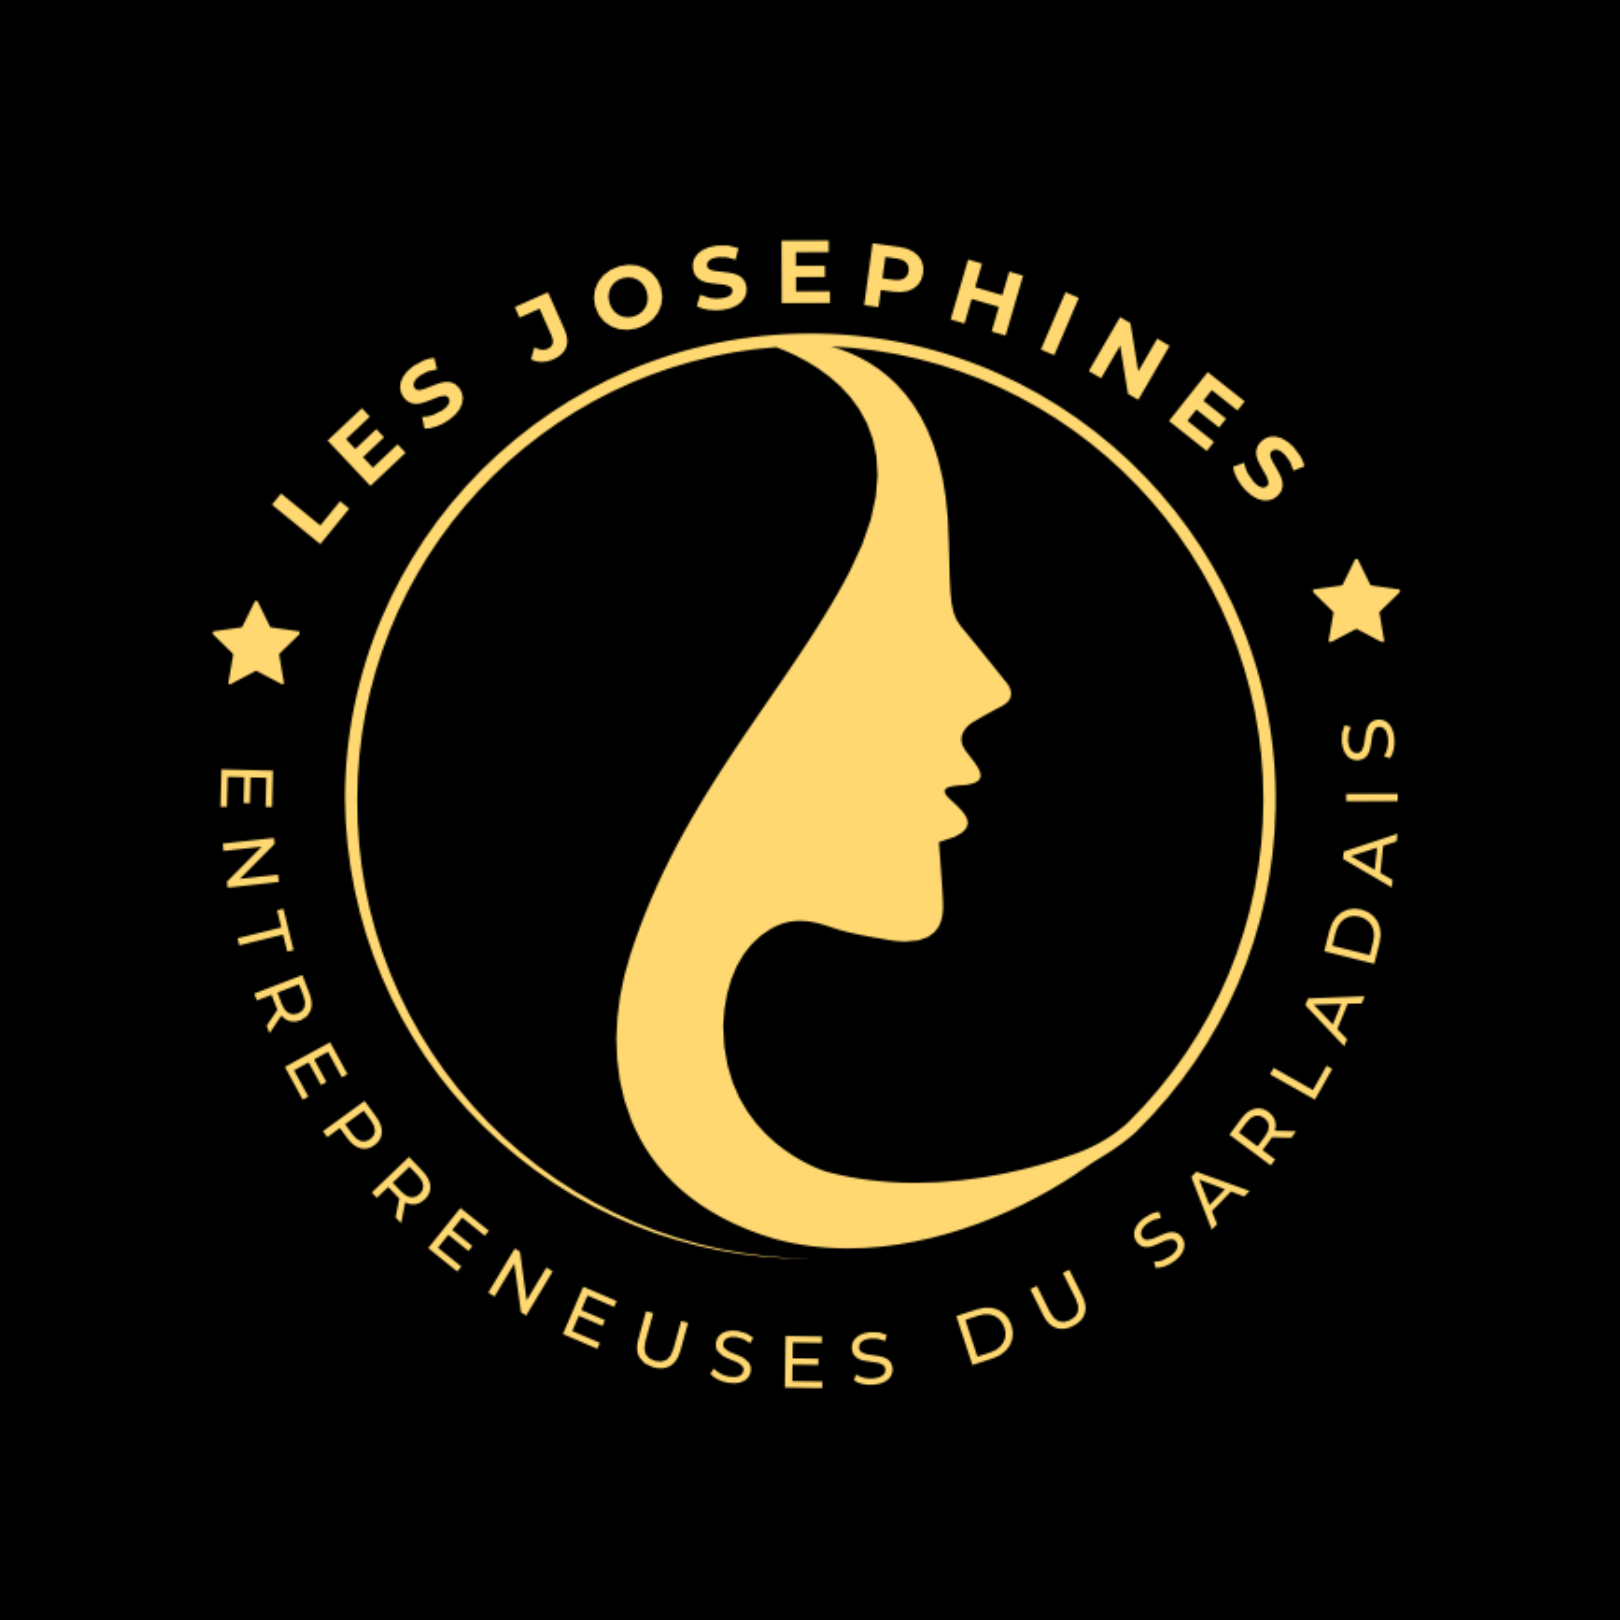 L'association ''Les Joséphines'' communique autour d'un logo fort pour se faire connaître.